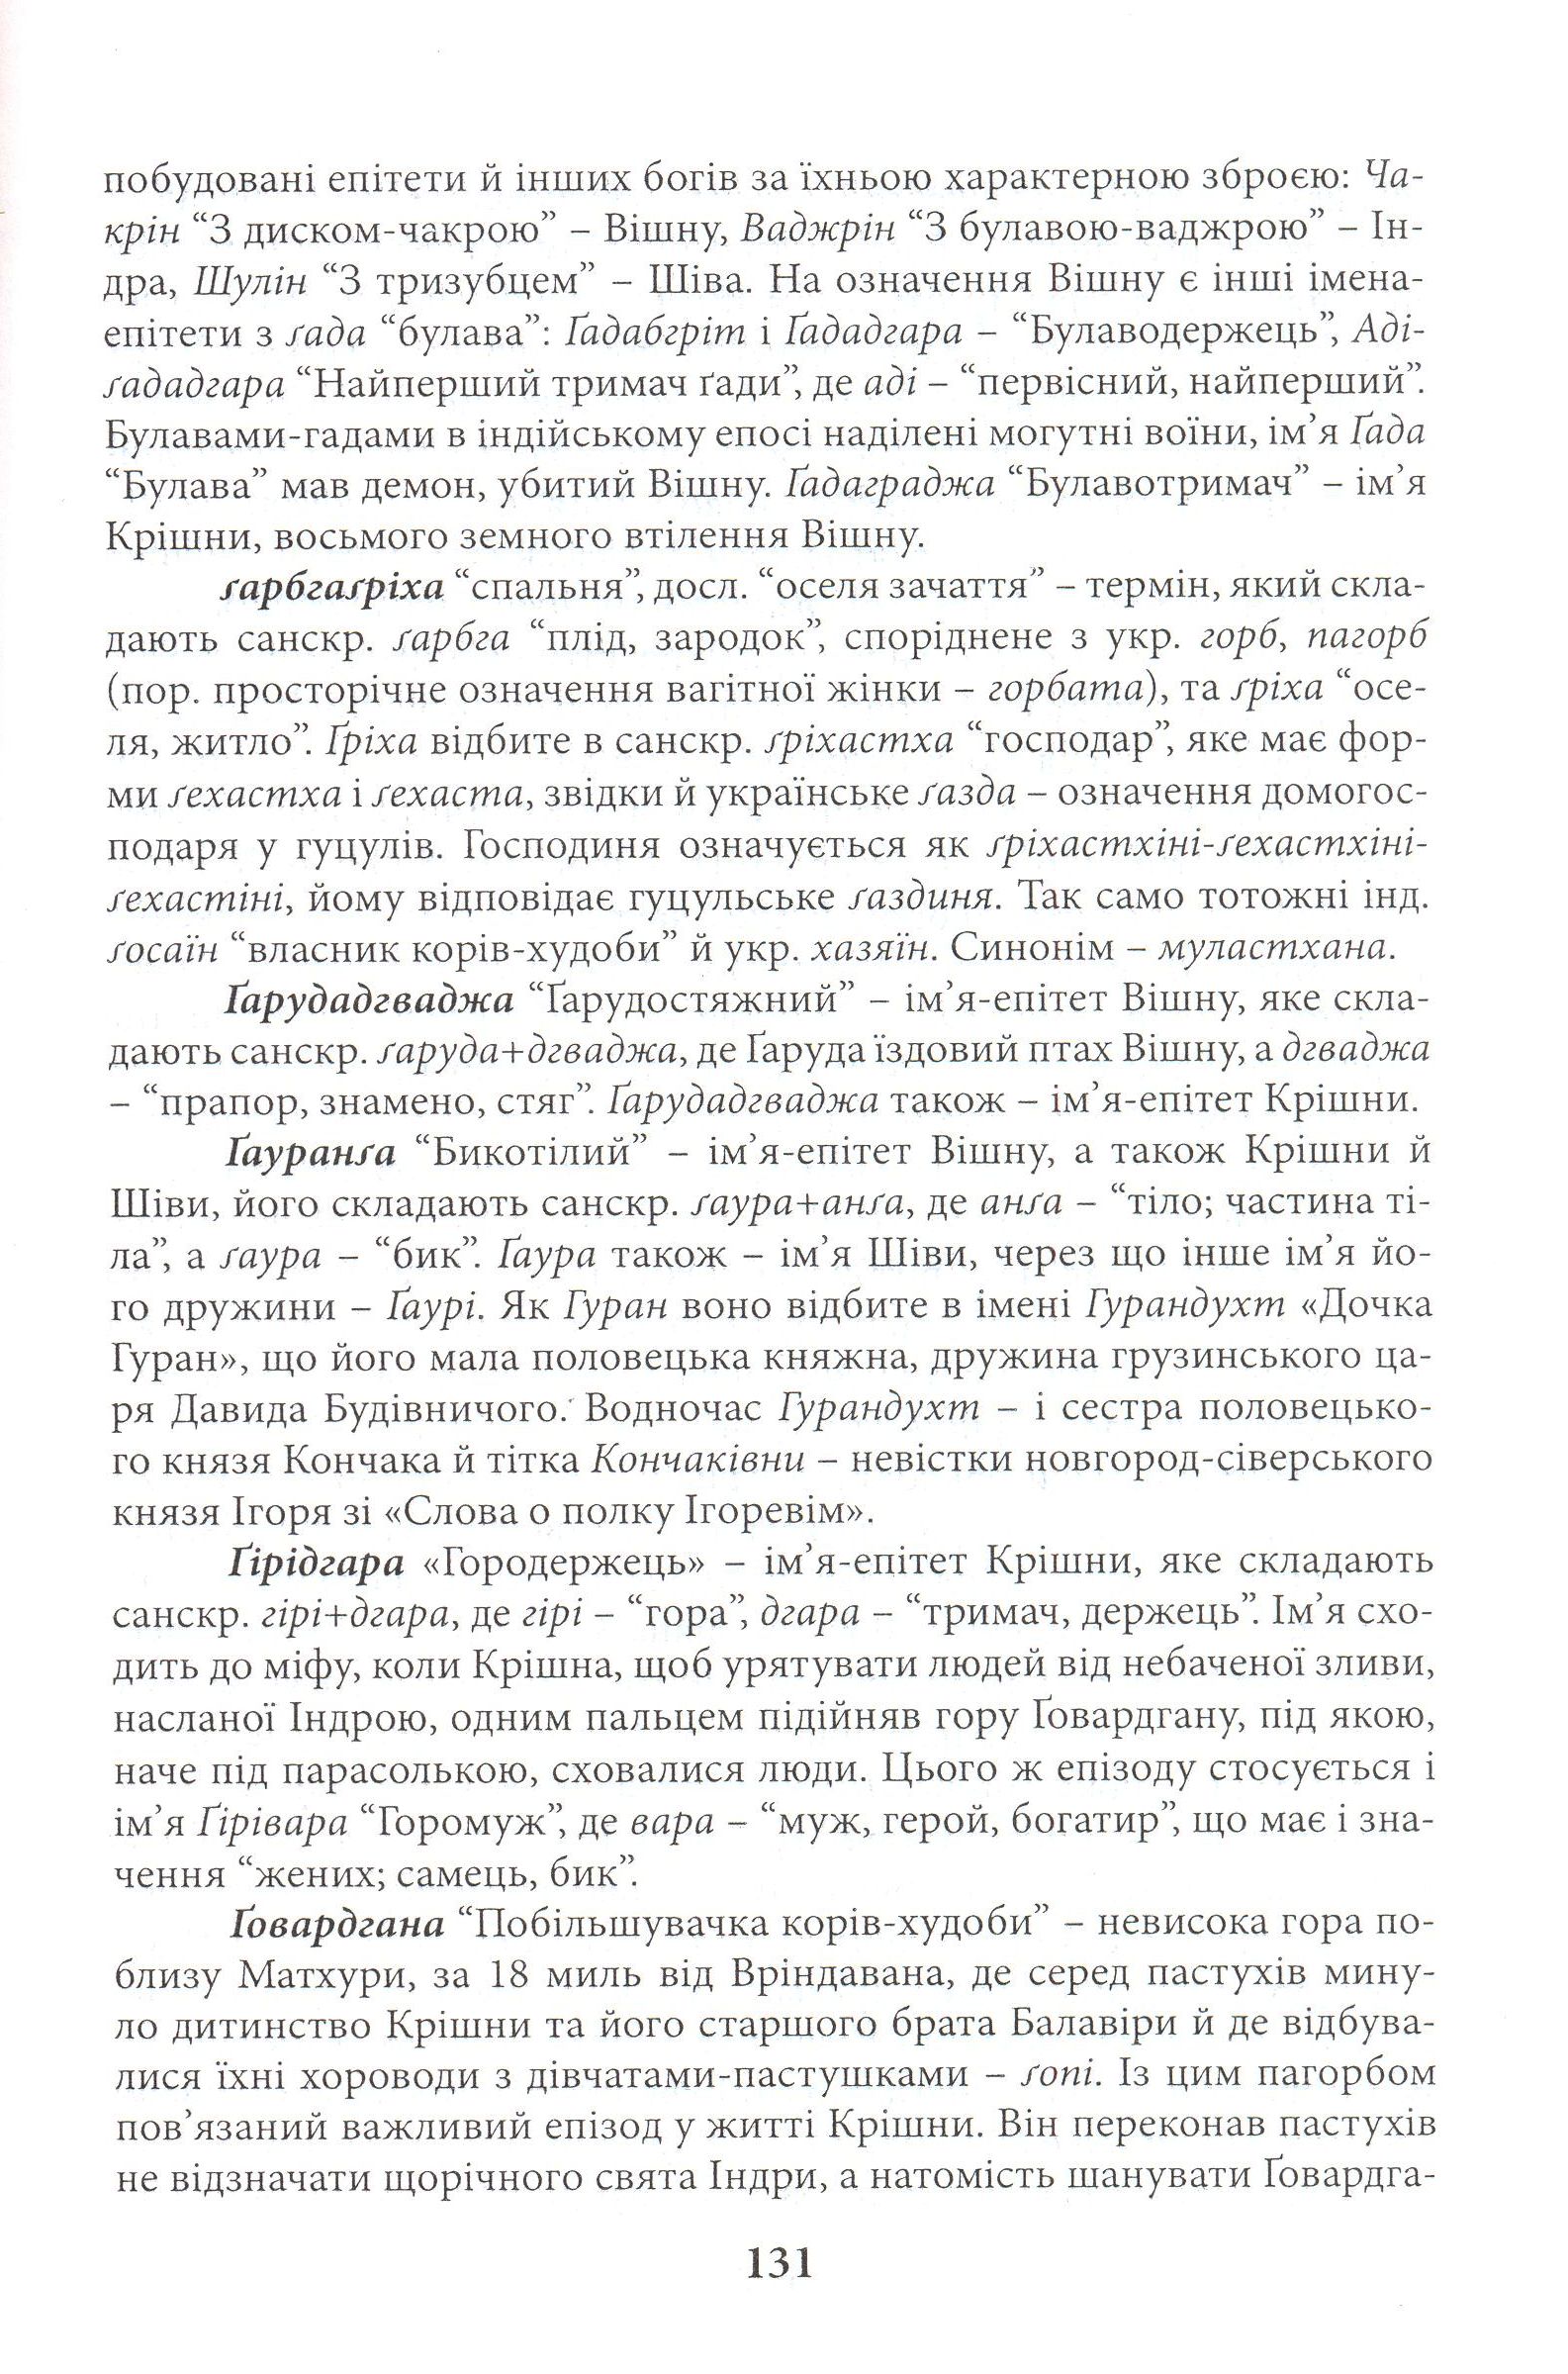 Давньоіндійські імена, назви, терміни: проекція на Україну